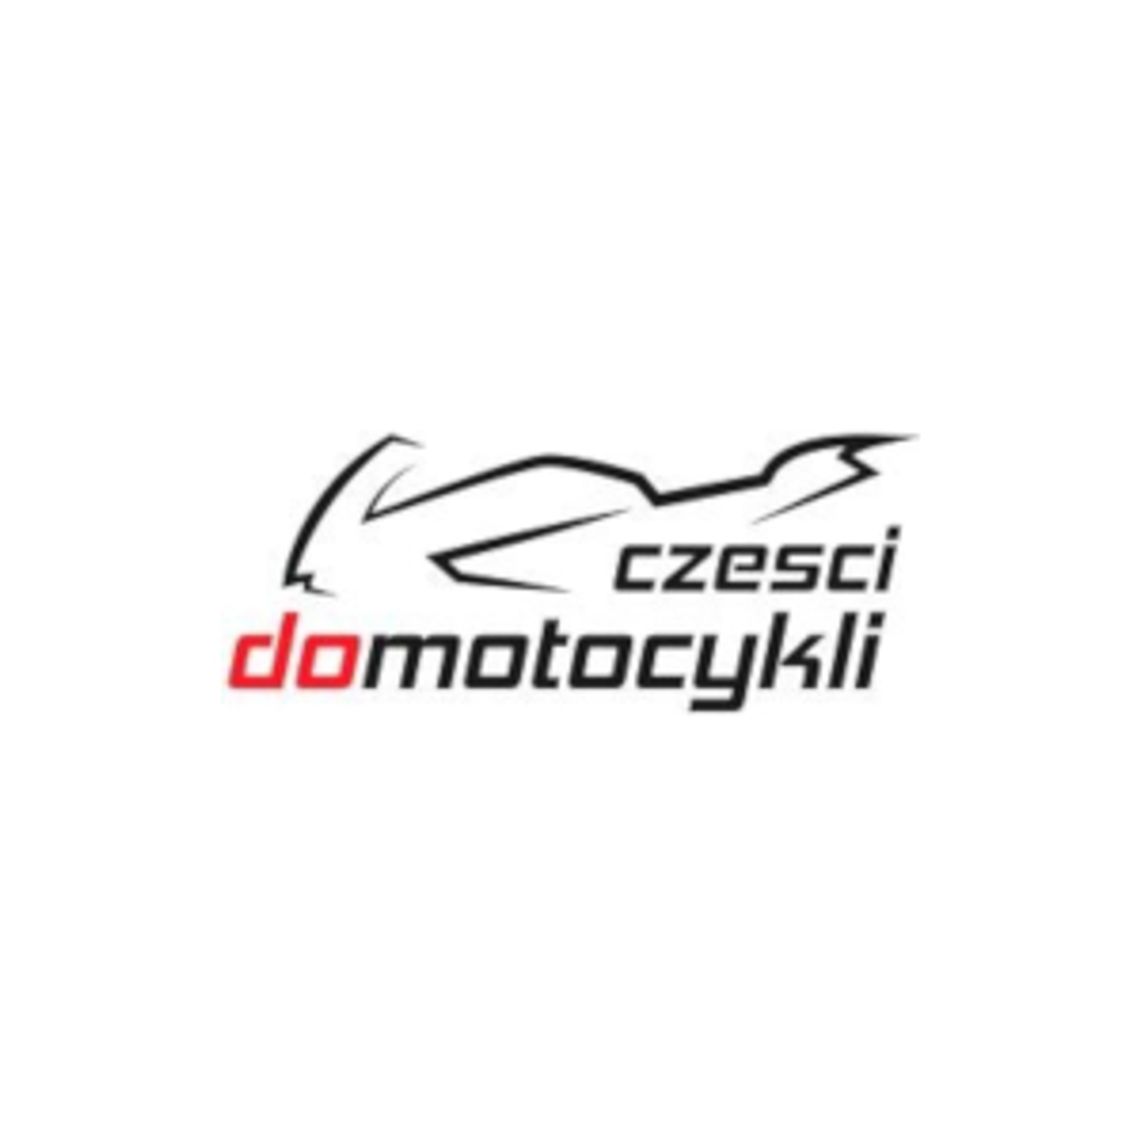 Sklep z częściami do motocykli - CzesciDoMotocykli.pl